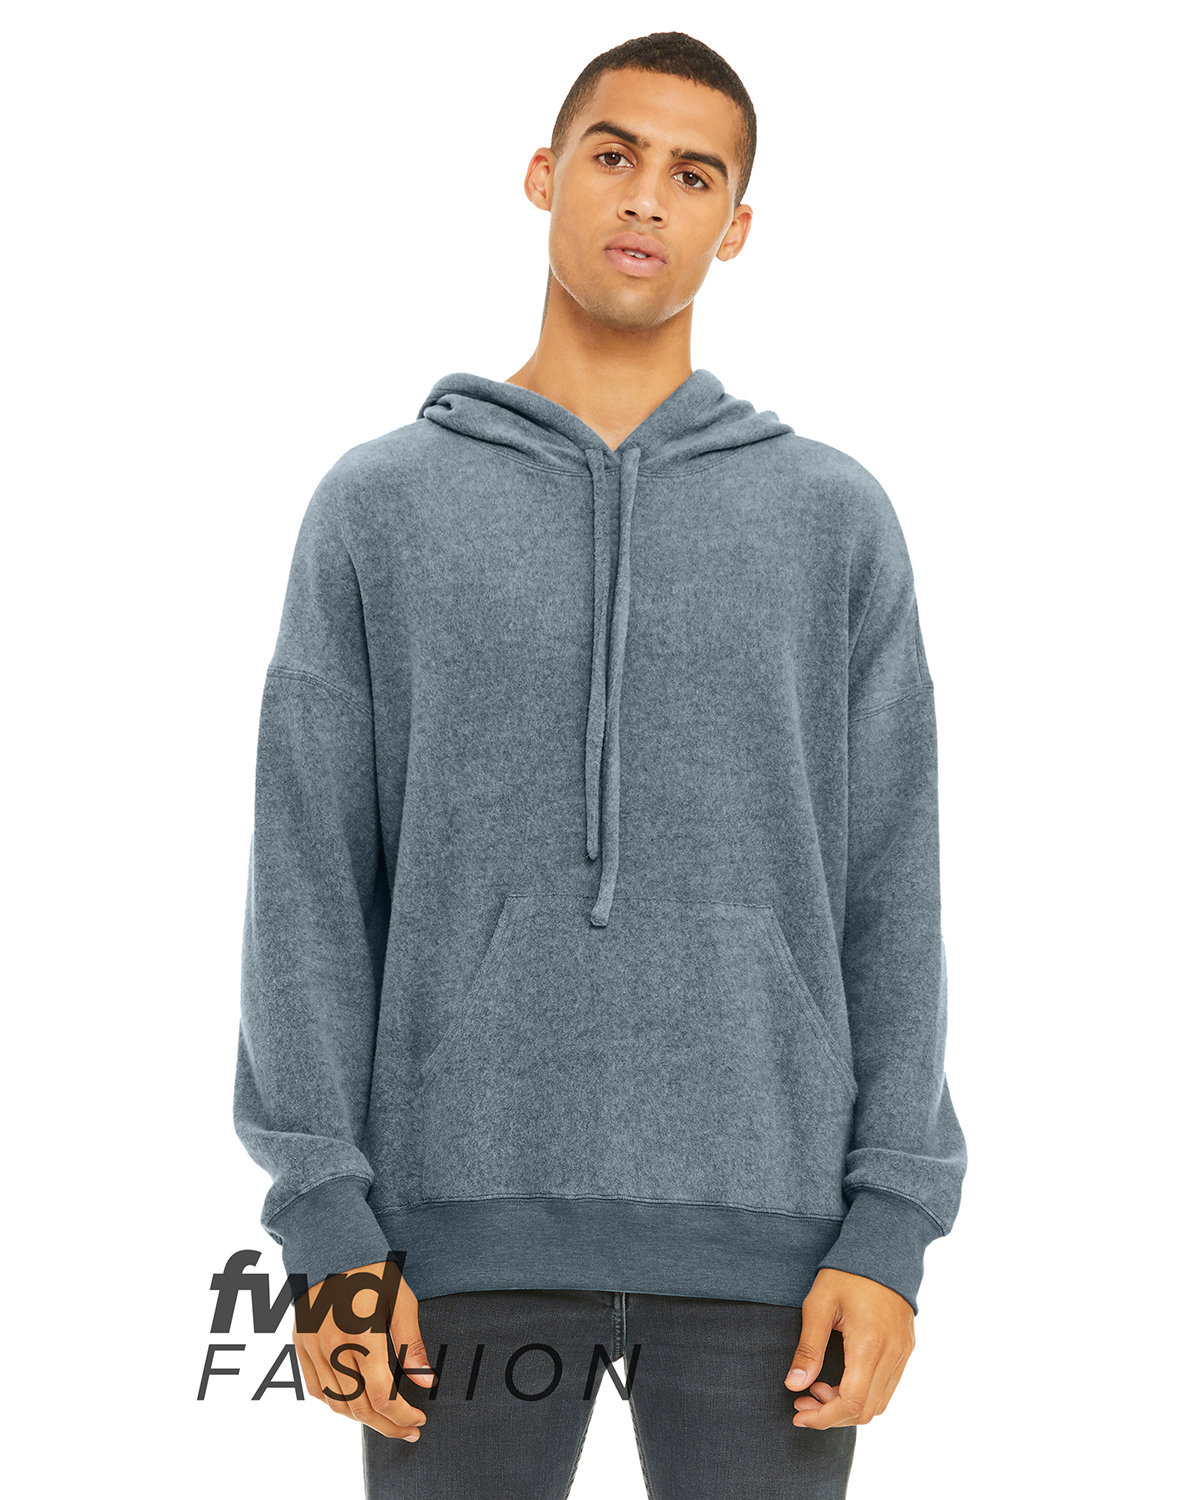 Fwd Fashion Unisex Sueded Fleece Pullover Sweatshirt-Bella &#43; Canvas